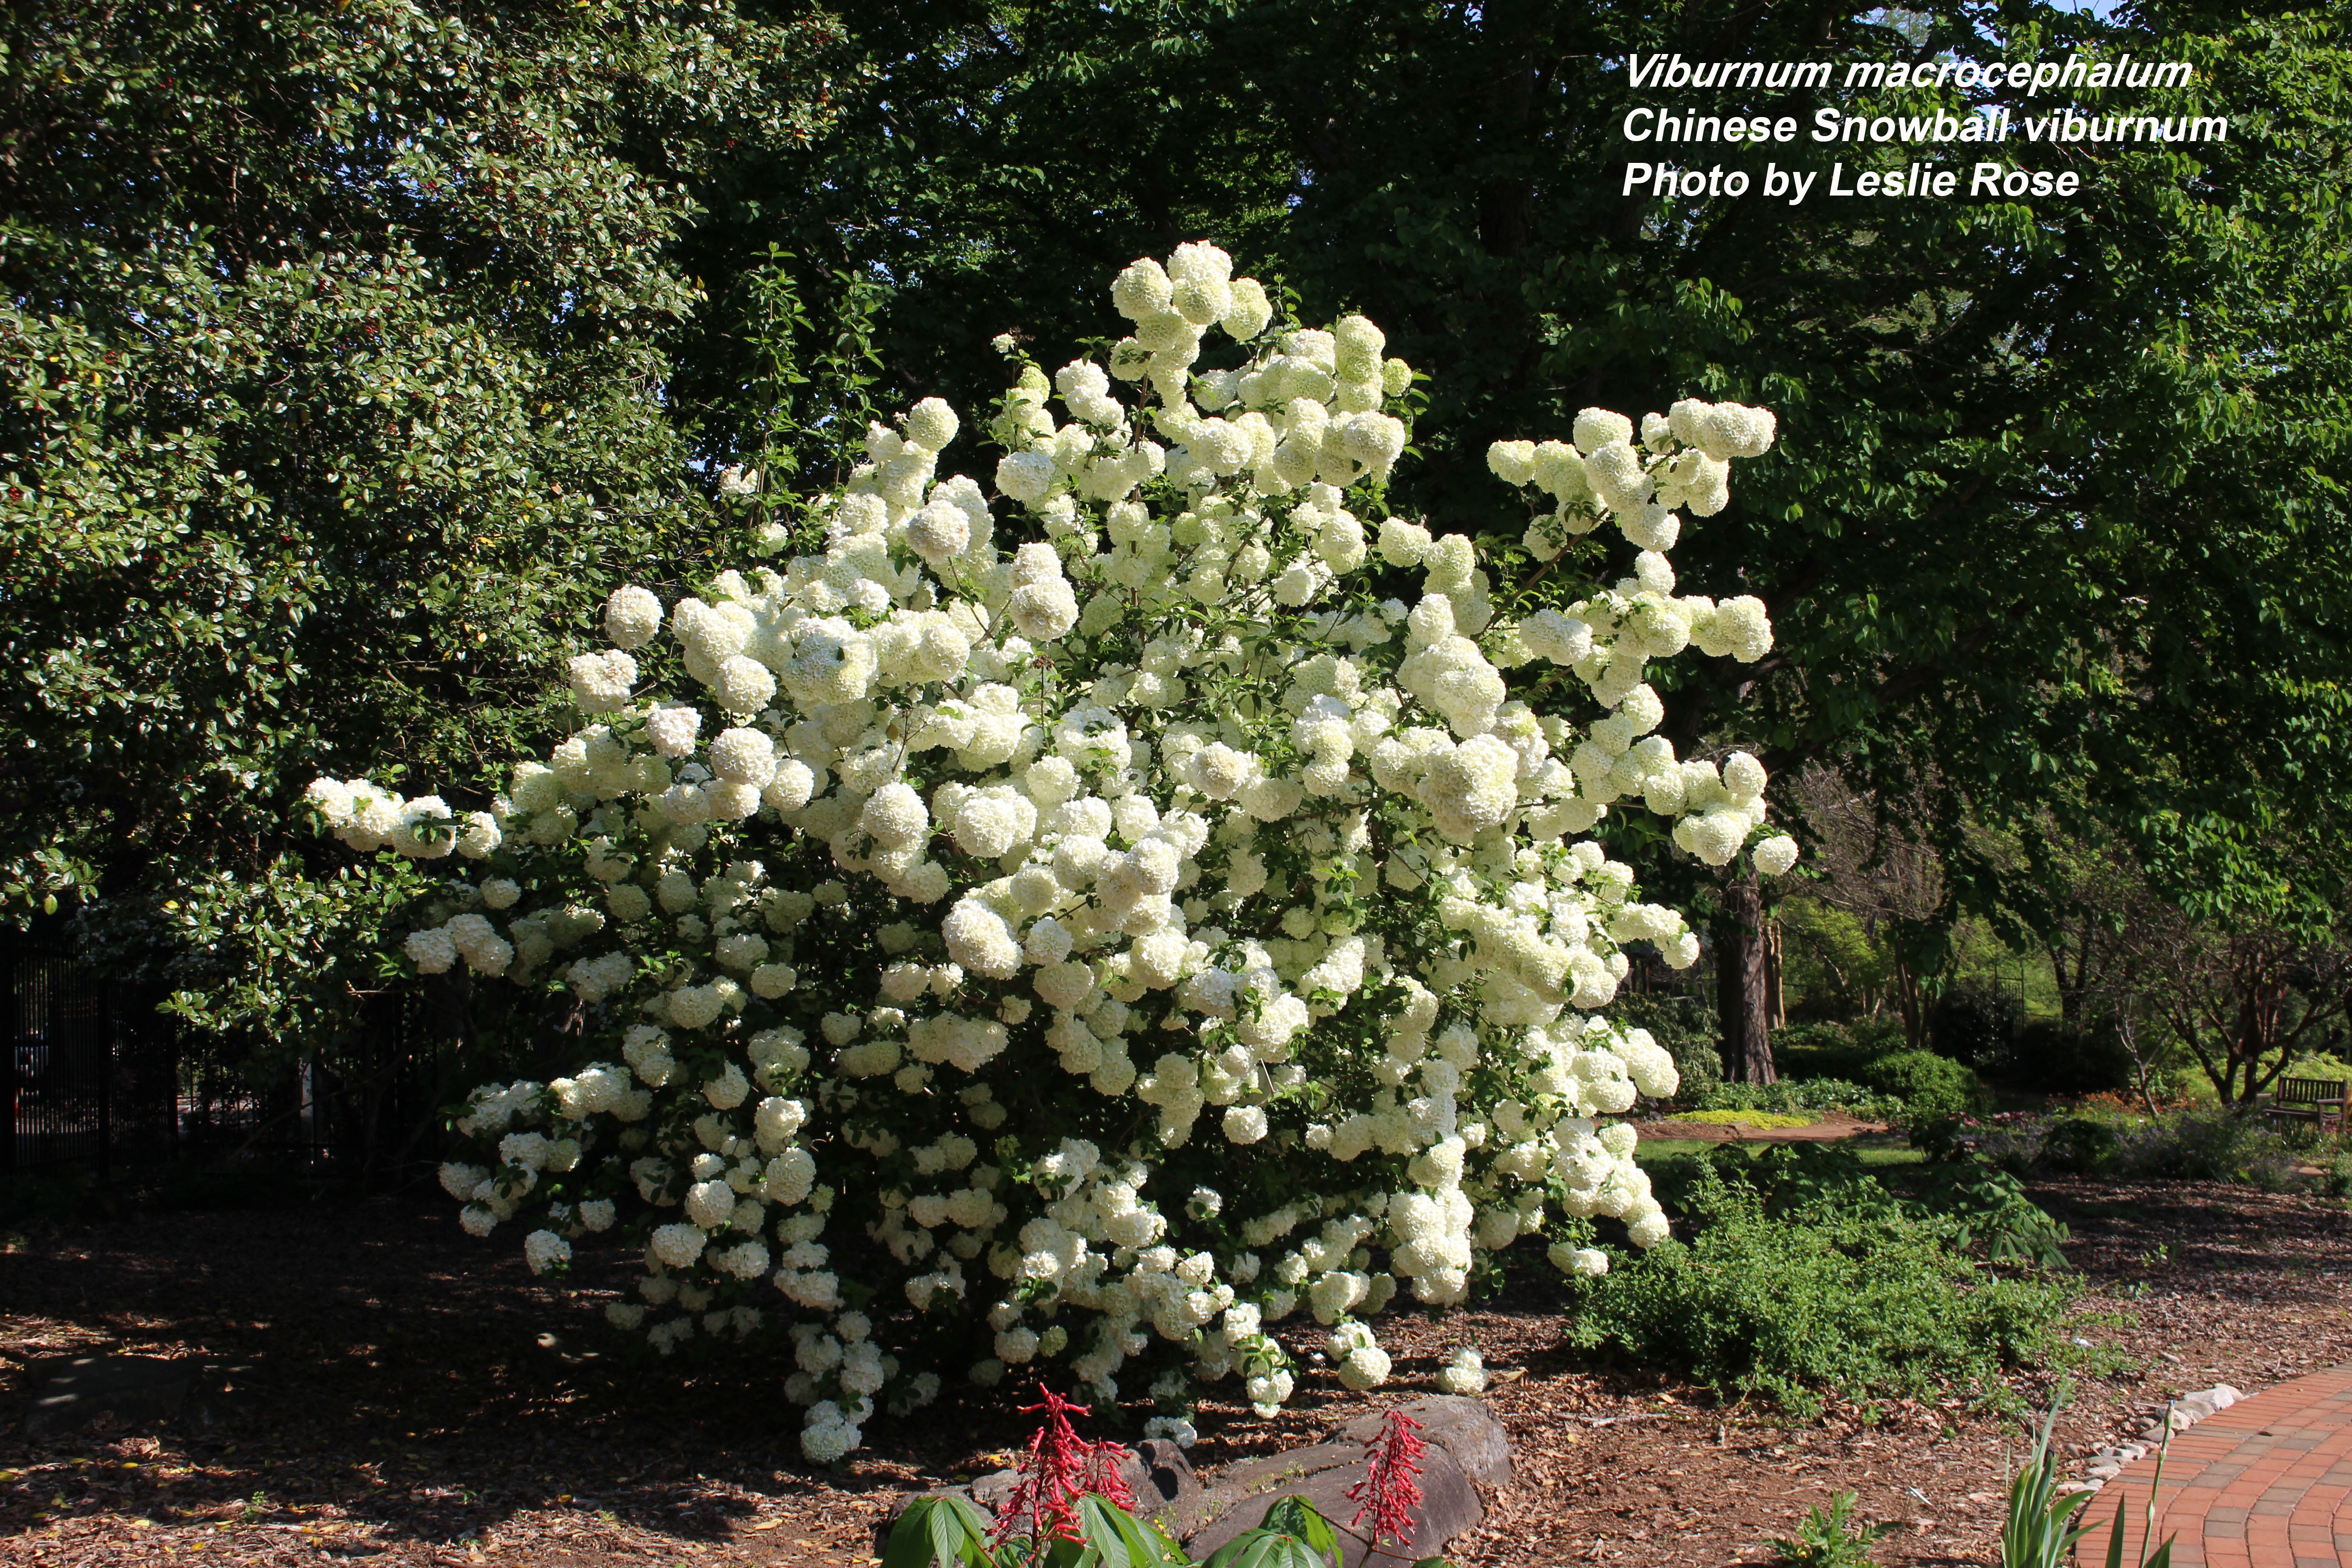 Chinese snowball viburnum shrub